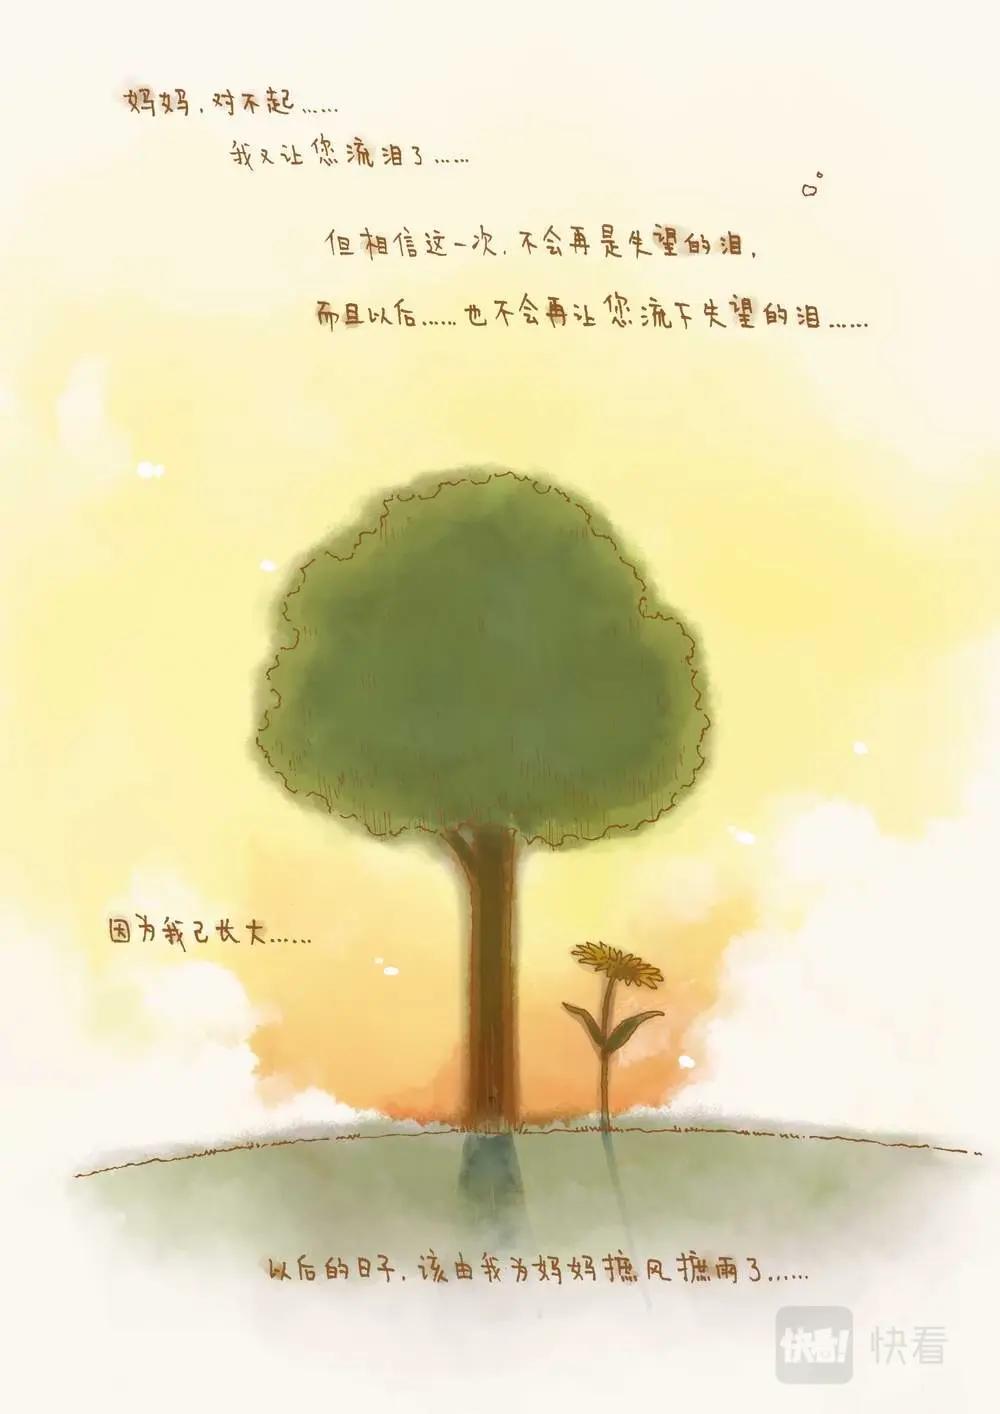 彩虹淚光 - 05 虹色康乃馨 - 6